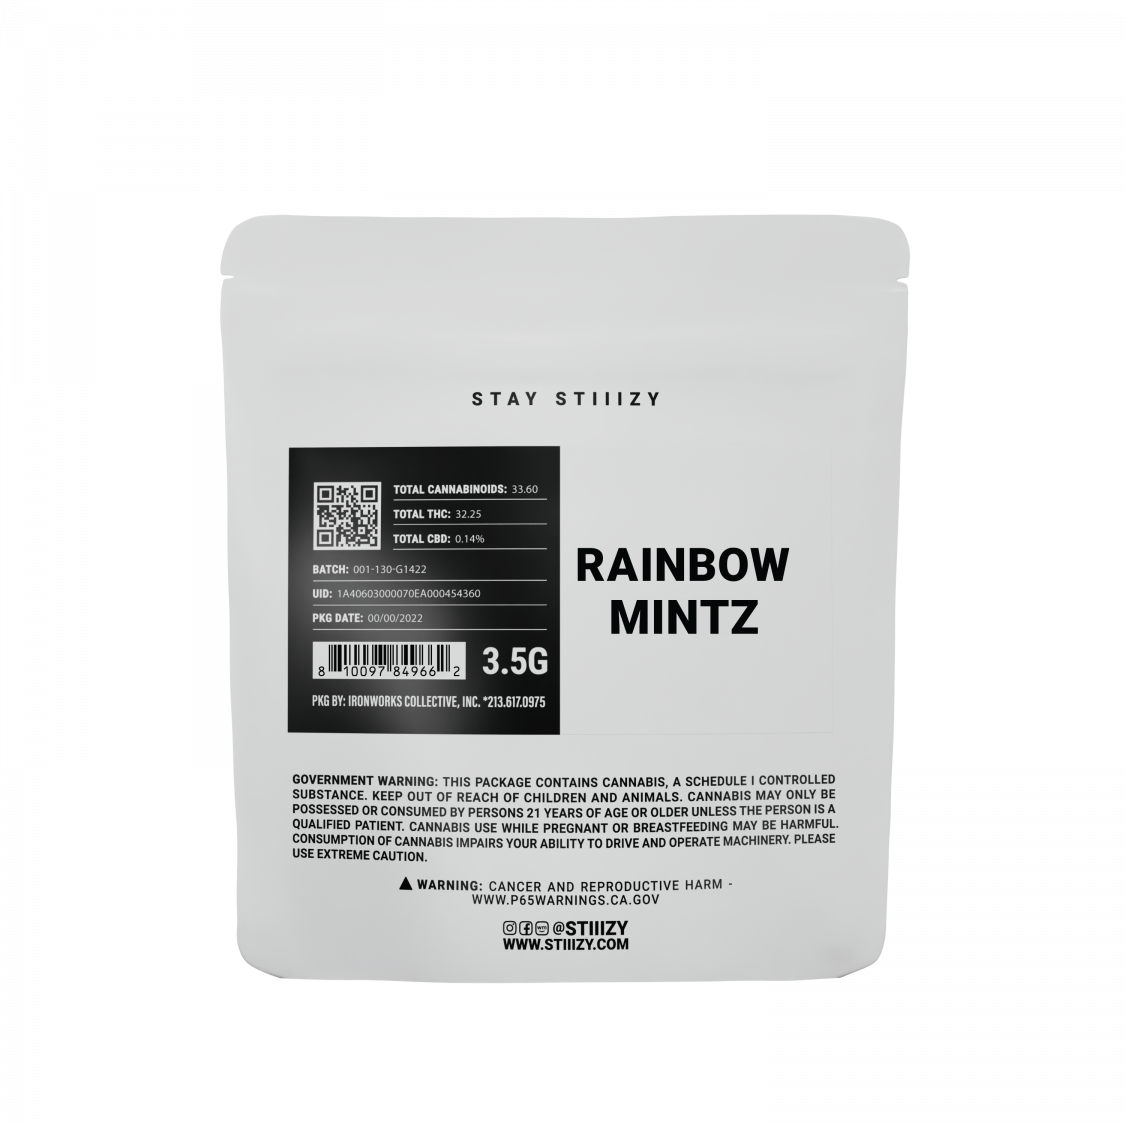 STIIIZY Rainbow Mintz Flower Pre-pack